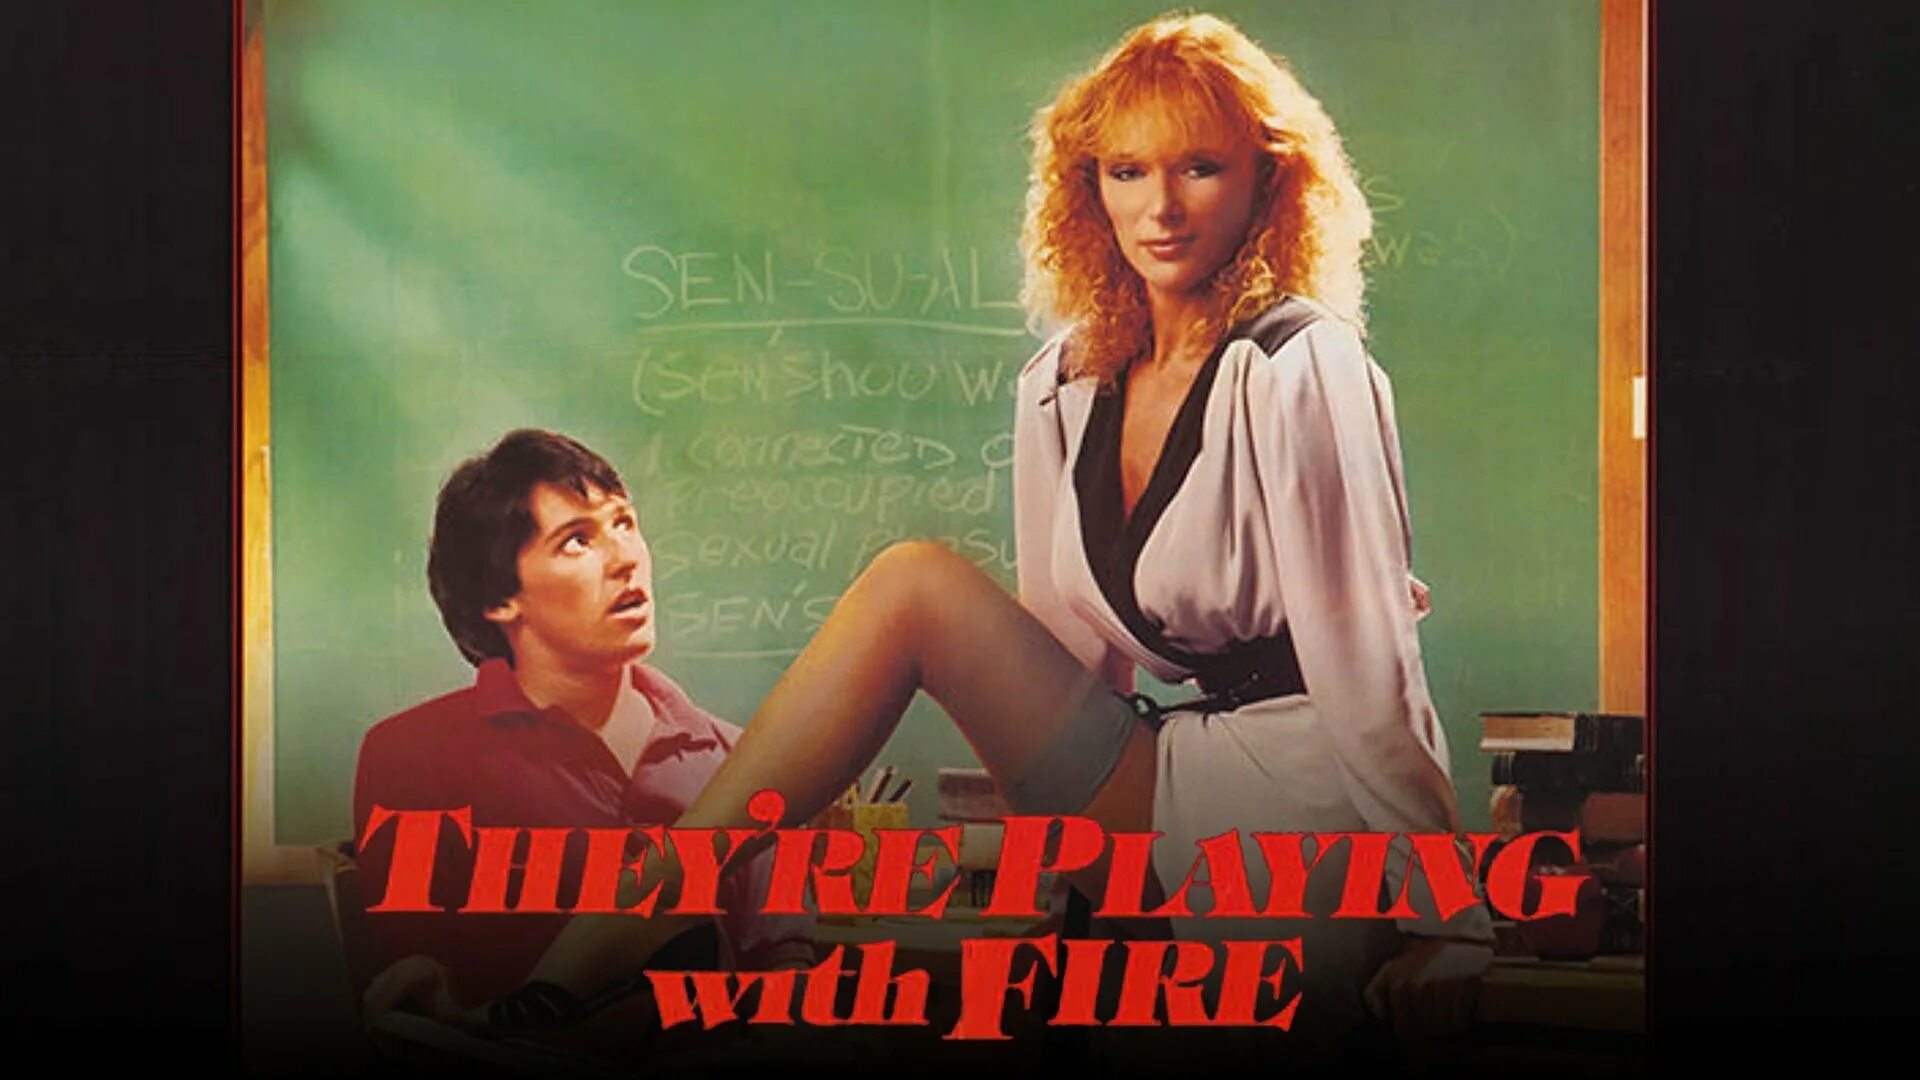 Сибил Даннинг they're playing with Fire. They're playing with Fire 1984.